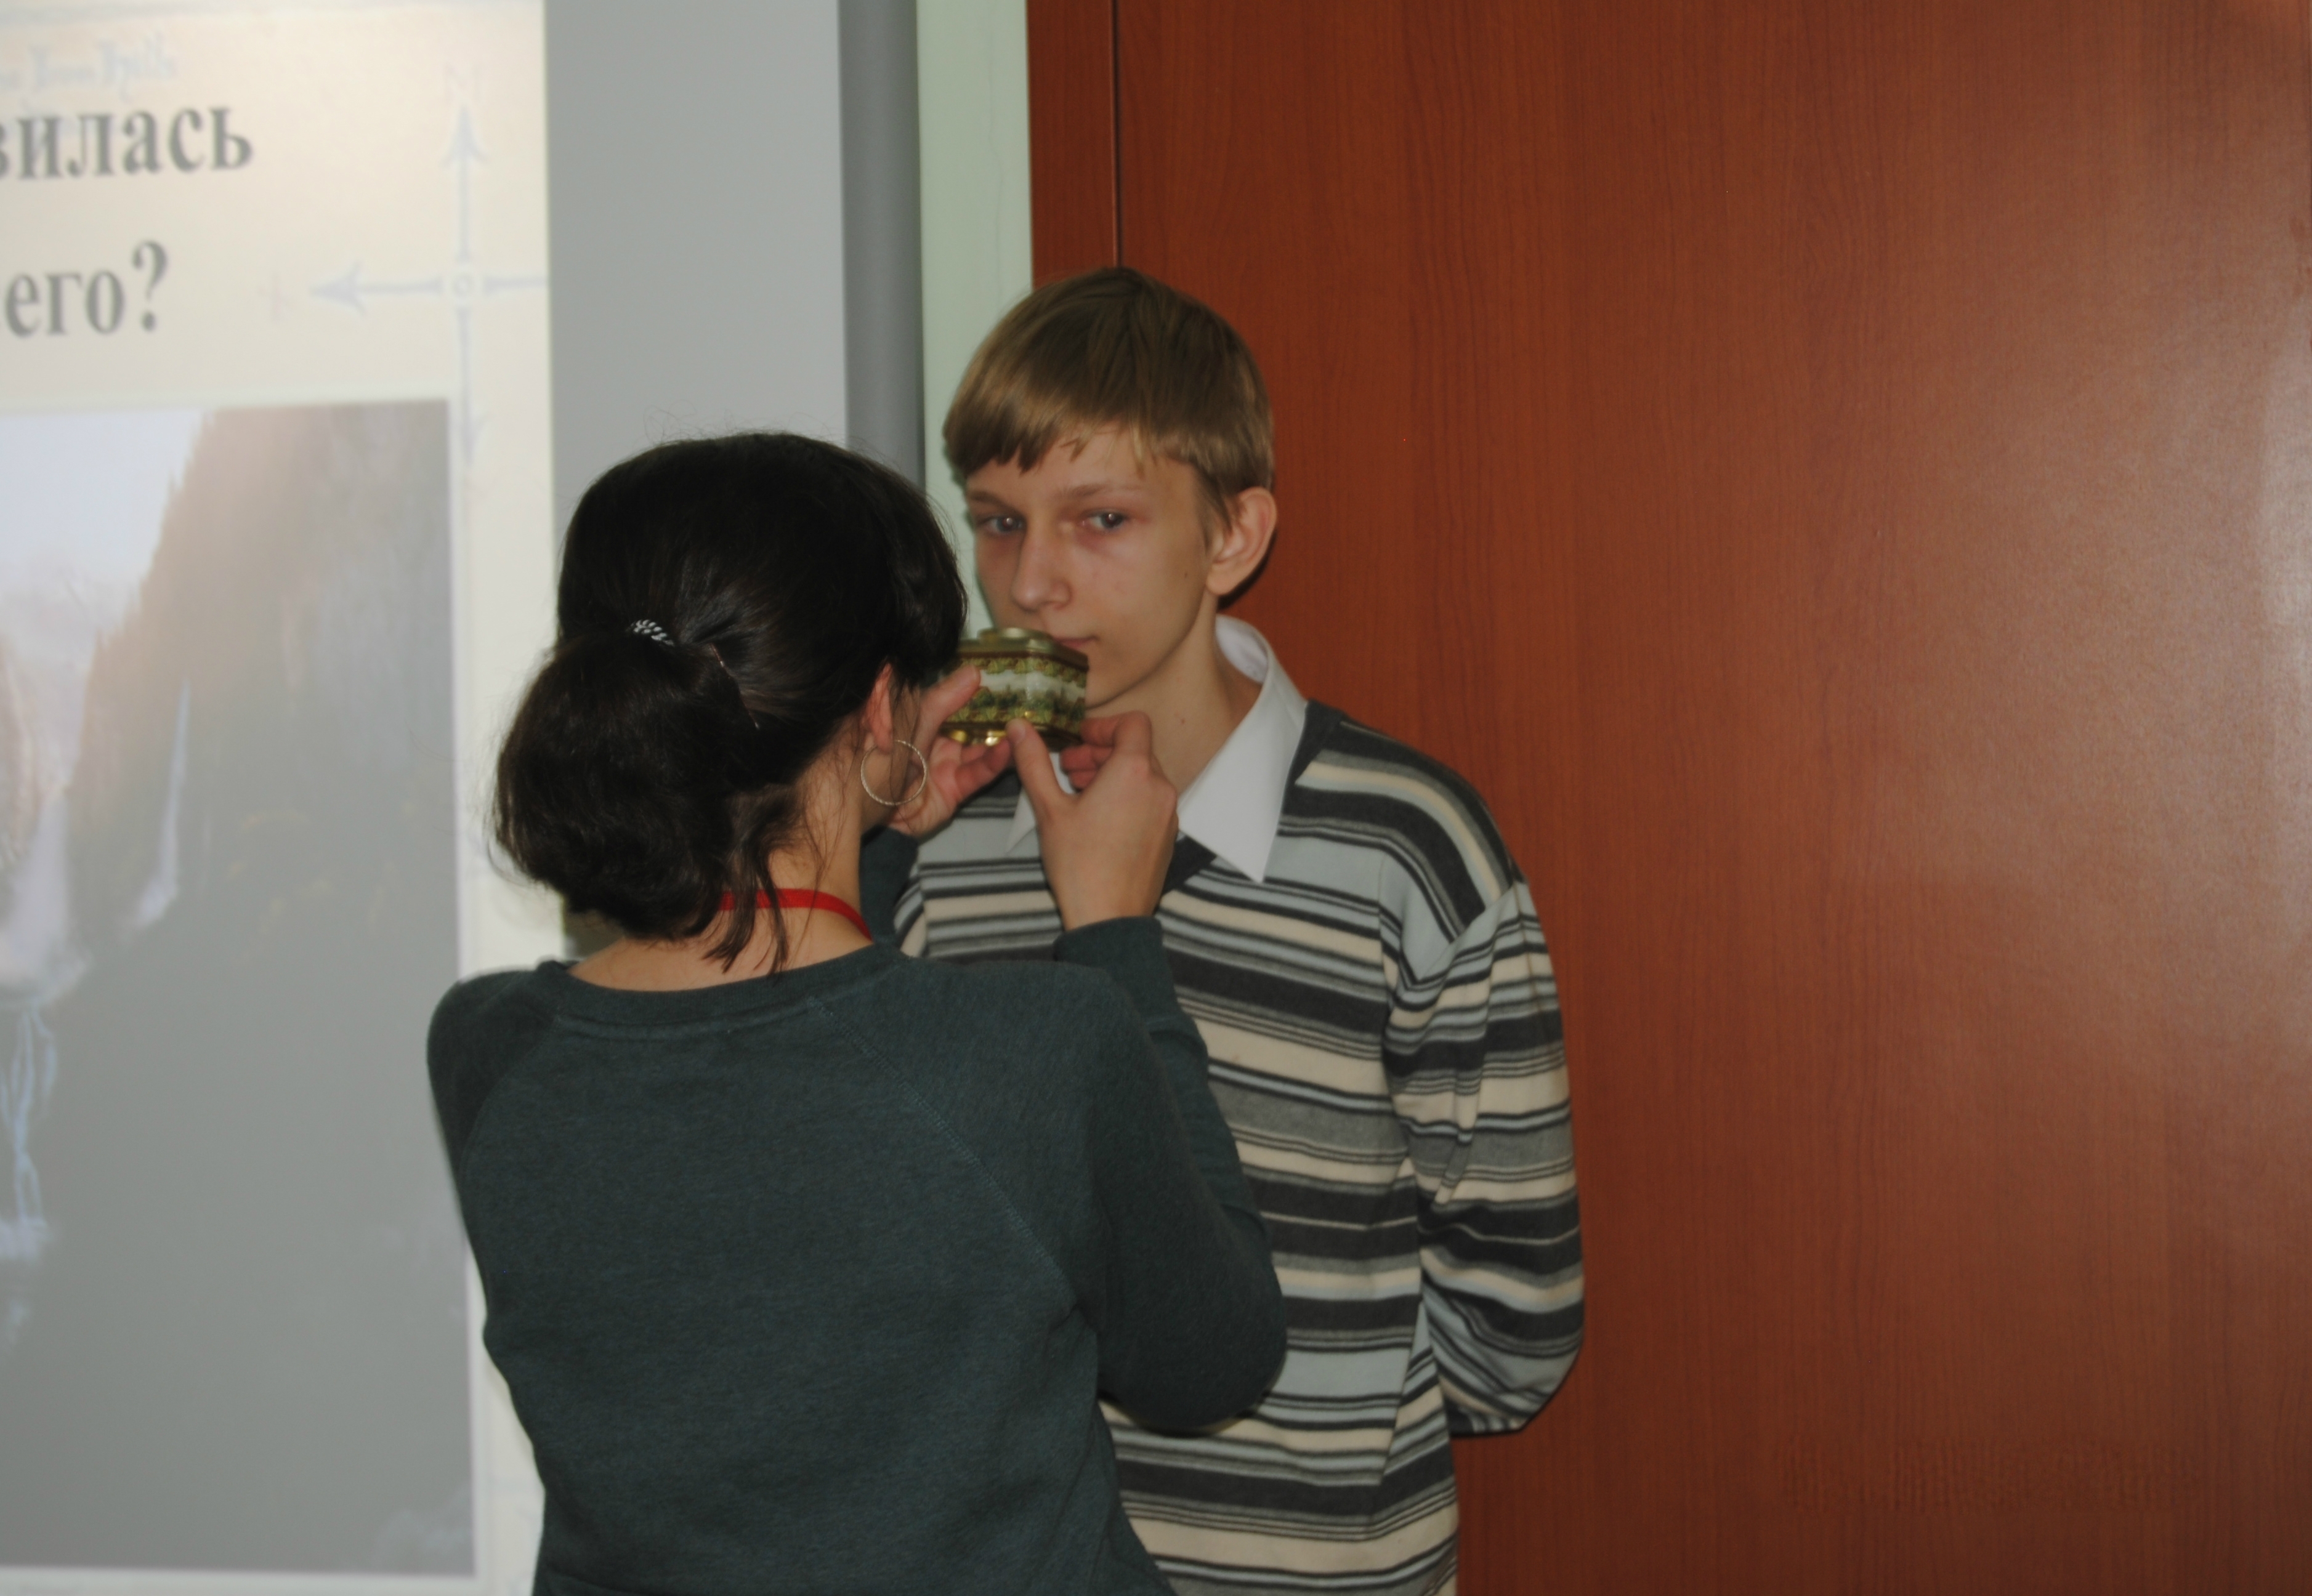 На горизонтальной фотографии изображен подросток, который пытается определить запах из ёмкости. Ёмкость держит ведущая мероприятия